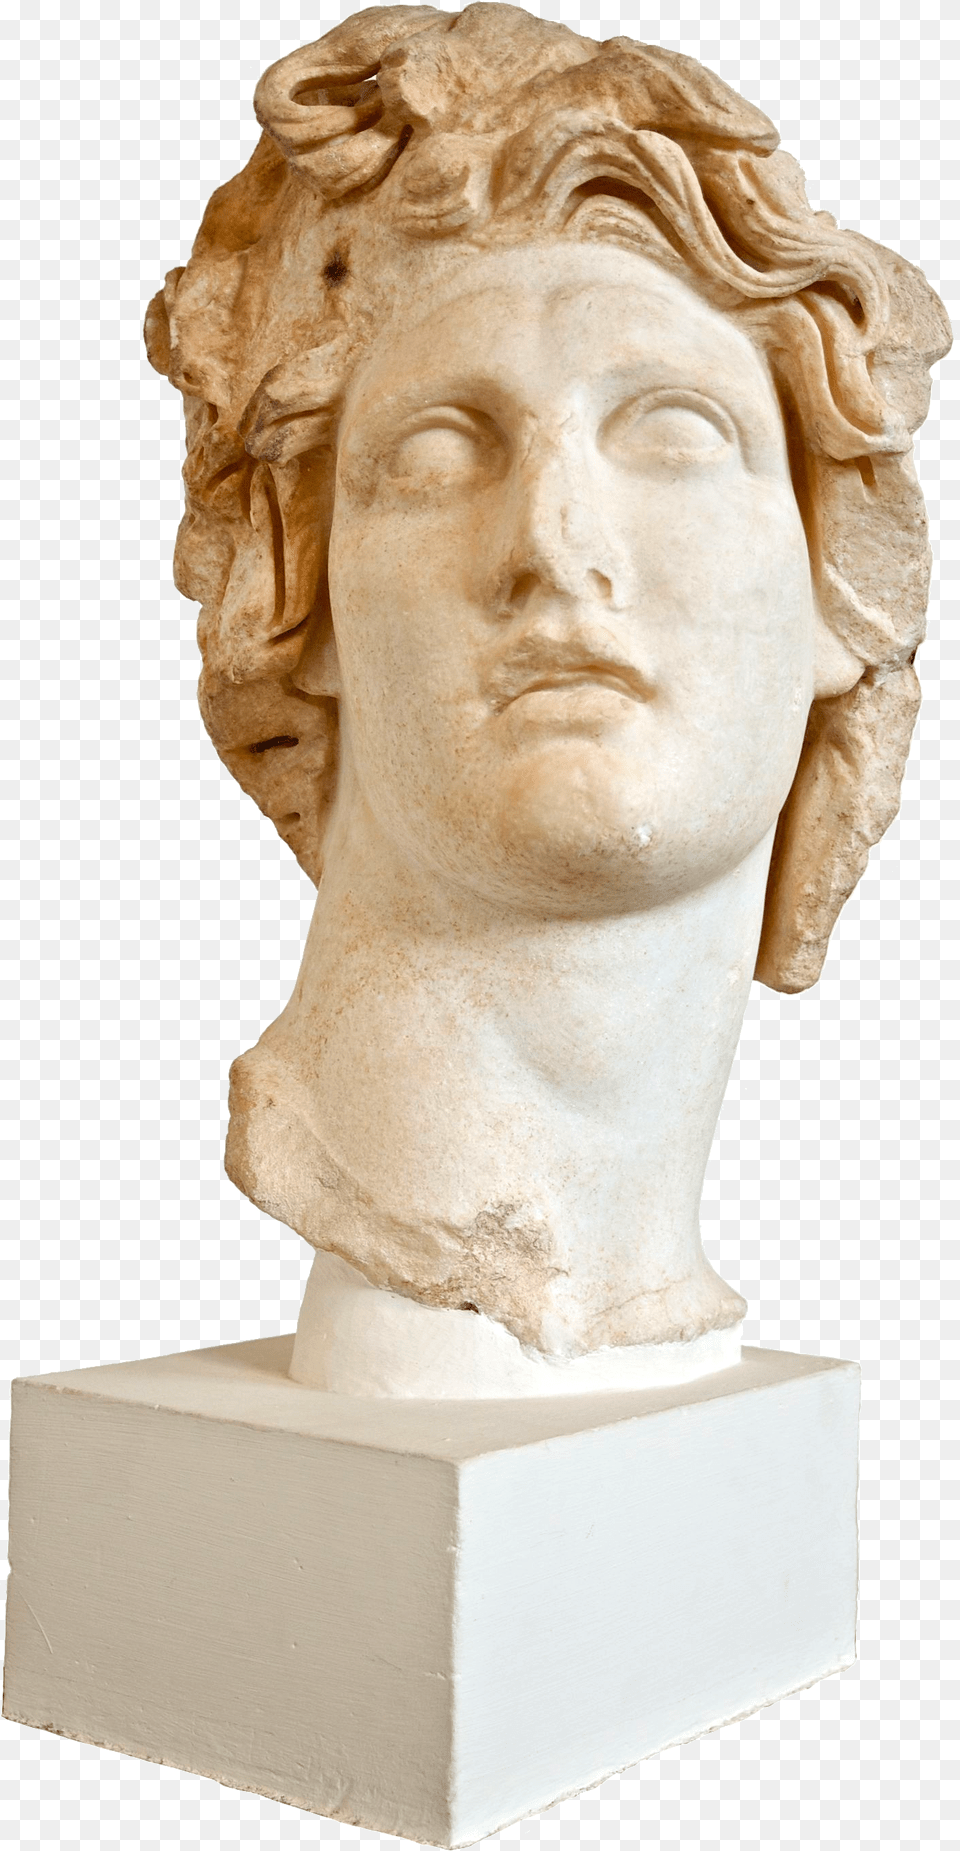 Greek Statue For Download On Mbtskoudsalg Vaporwave Statue, Art, Adult, Face, Head Png